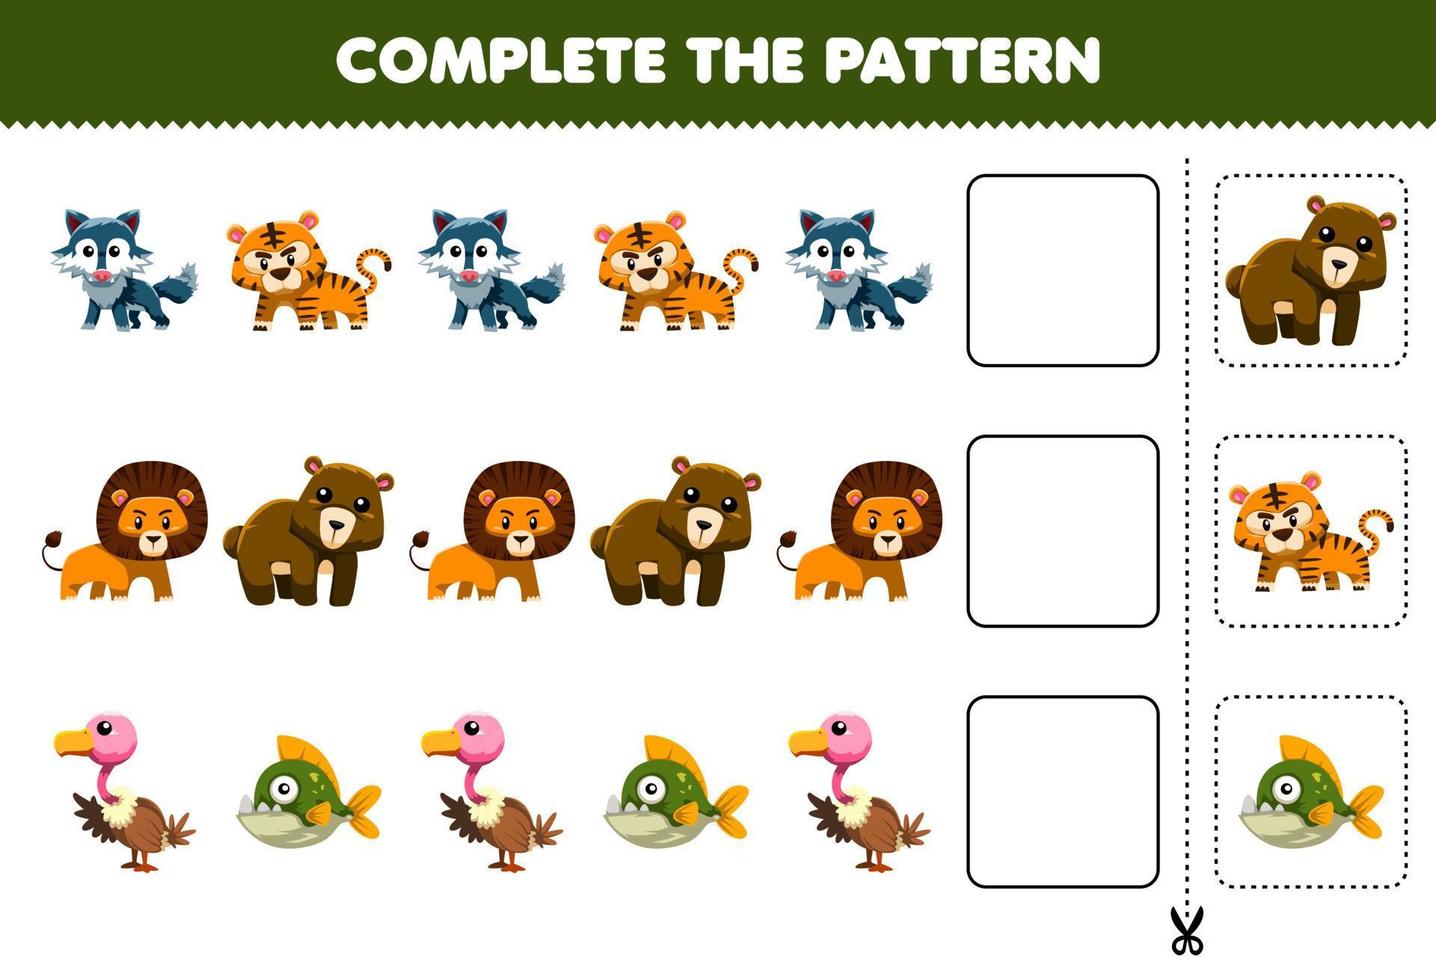 jogo de educação para crianças completa o padrão de pensamento lógico, encontre a regularidade e continue a tarefa de linha com o personagem animal carnívoro fofo vetor